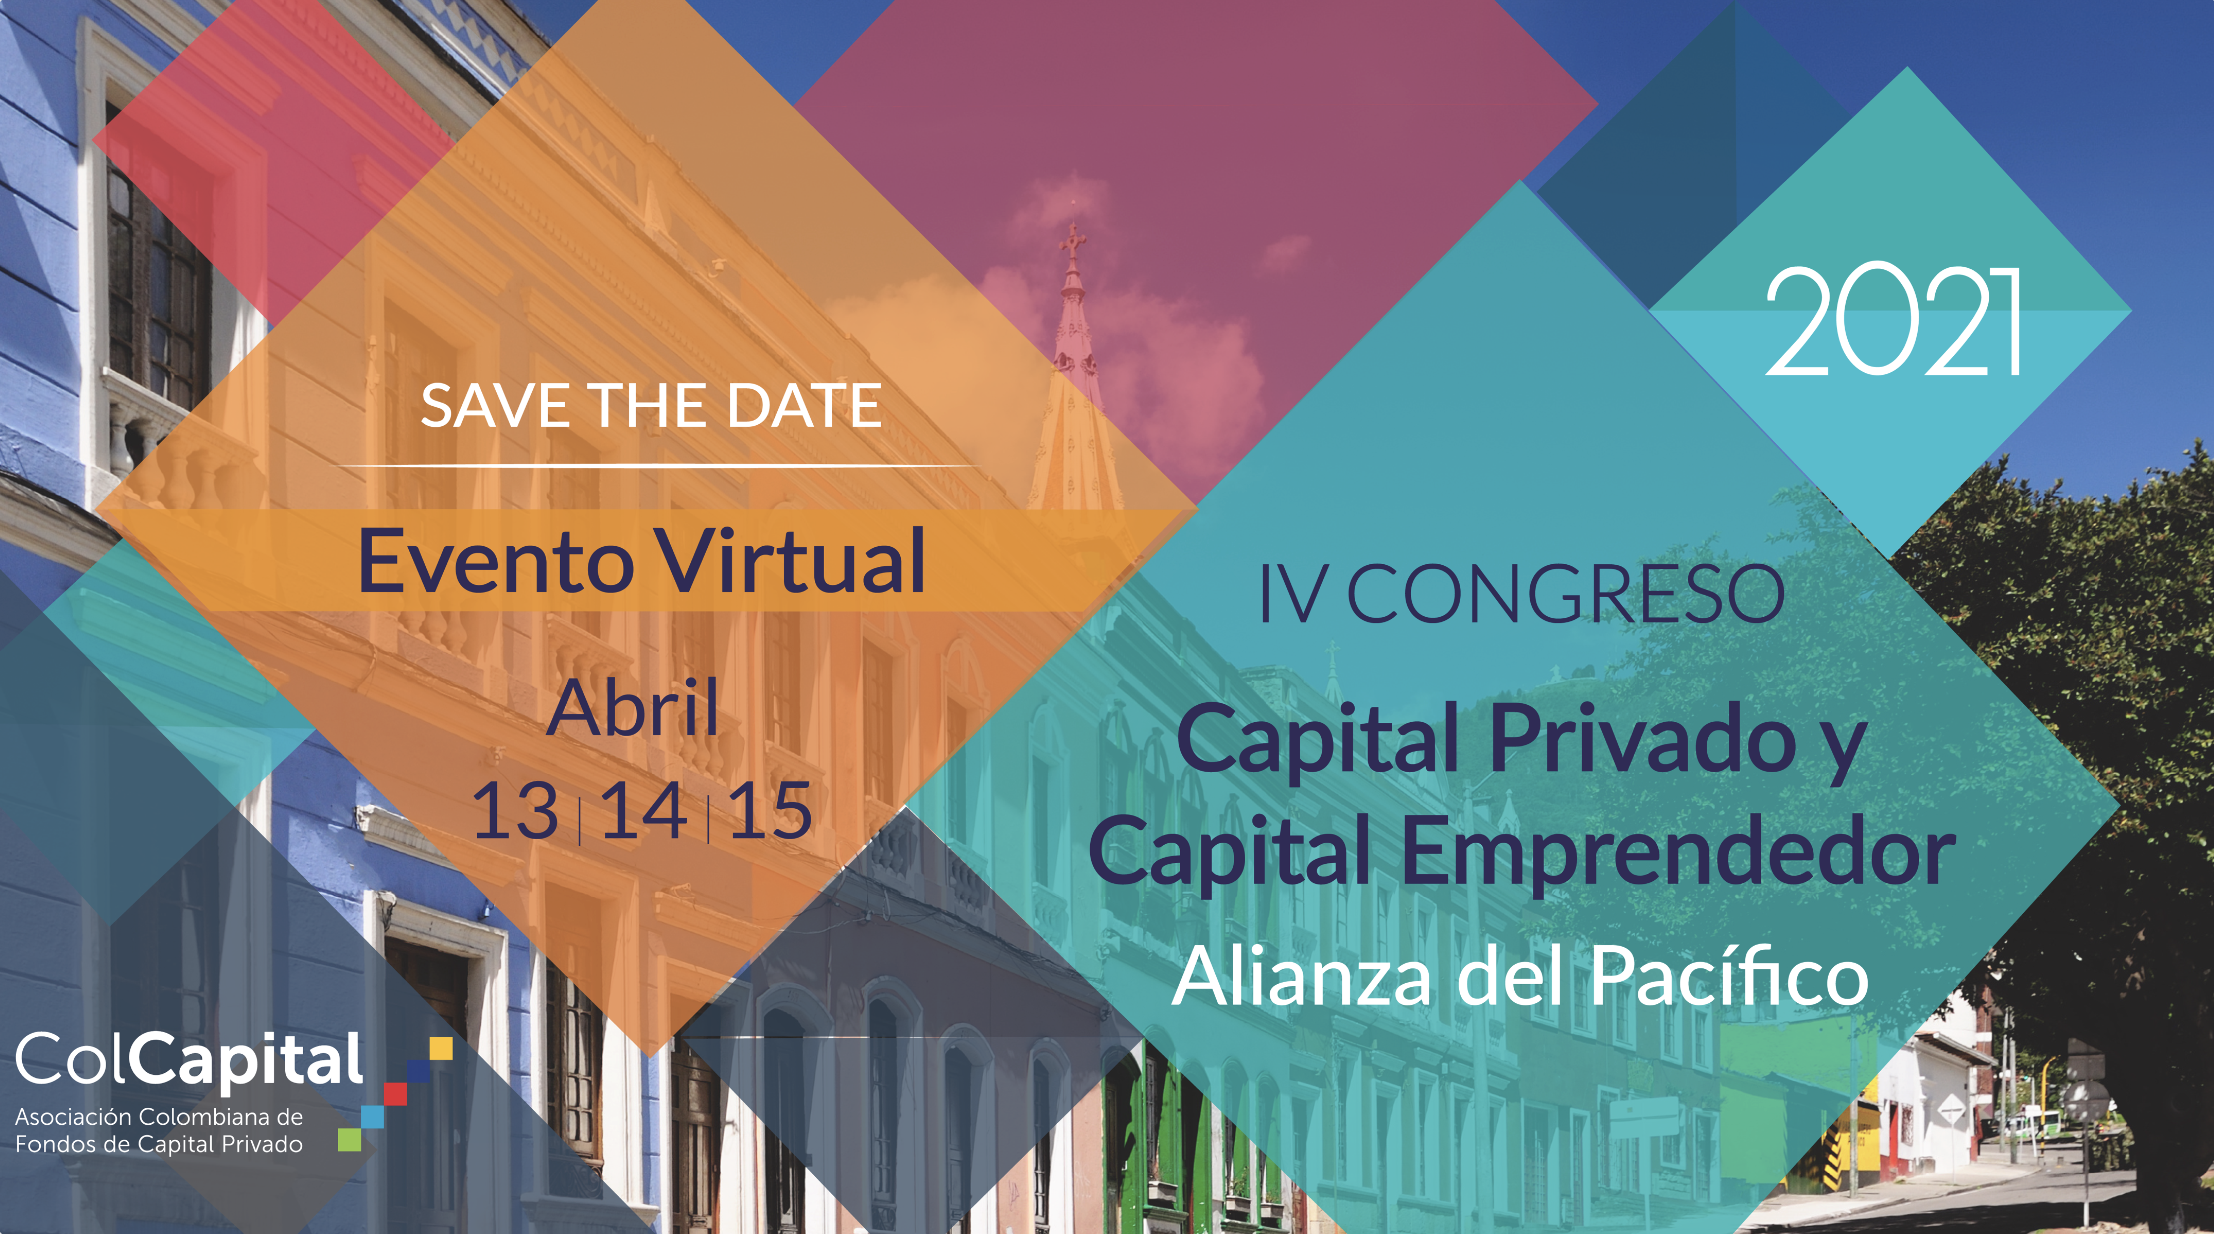 IV Congreso de Capital Privado y Capital Emprendedor de la Alianza del Pacífico 2021